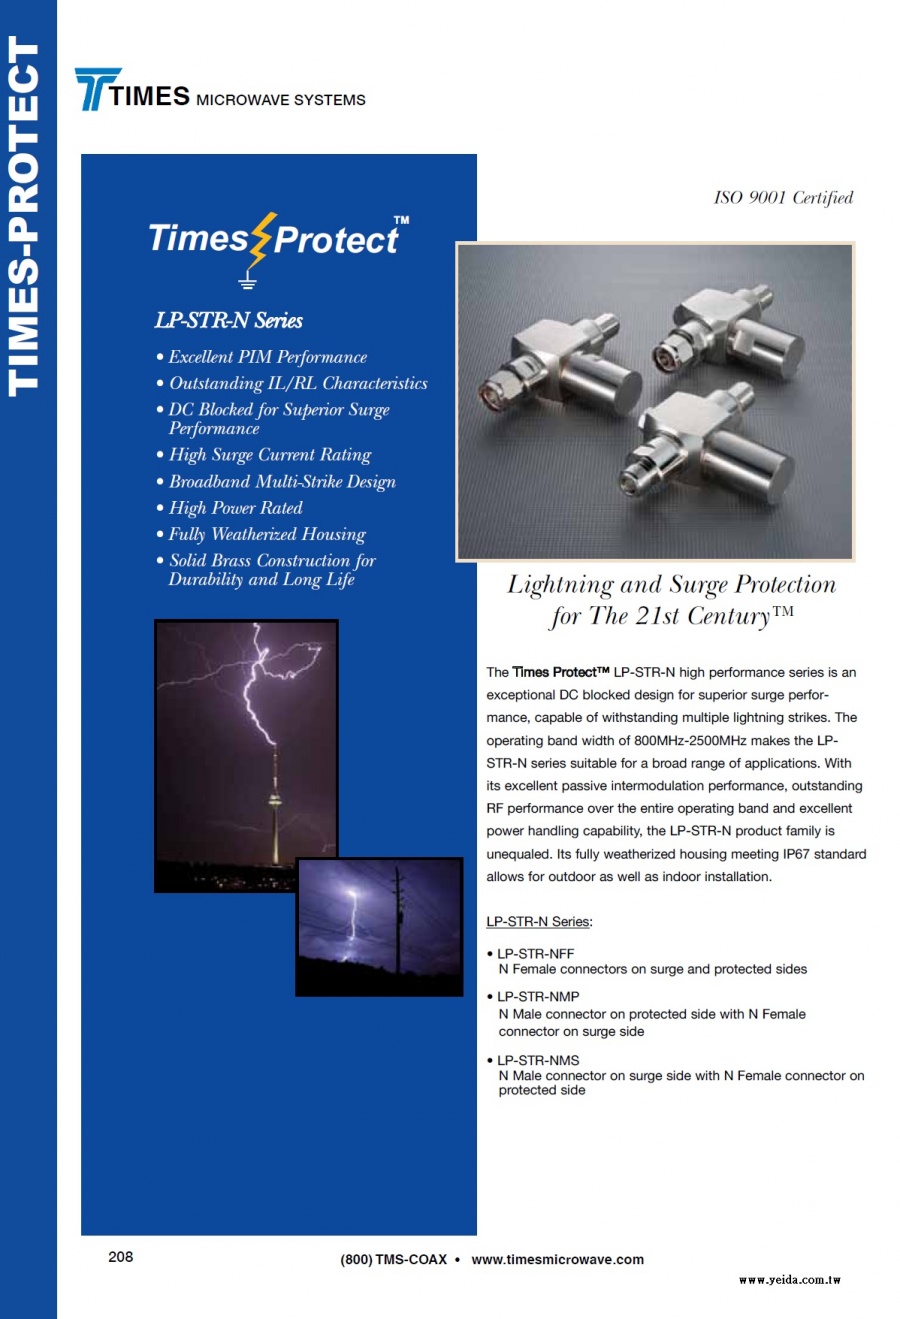 TIMES-LP-STR-N Series Times-Protect Lightning Protection (LMR低損耗同軸電纜高性能的電湧突波保護避雷器)產品圖